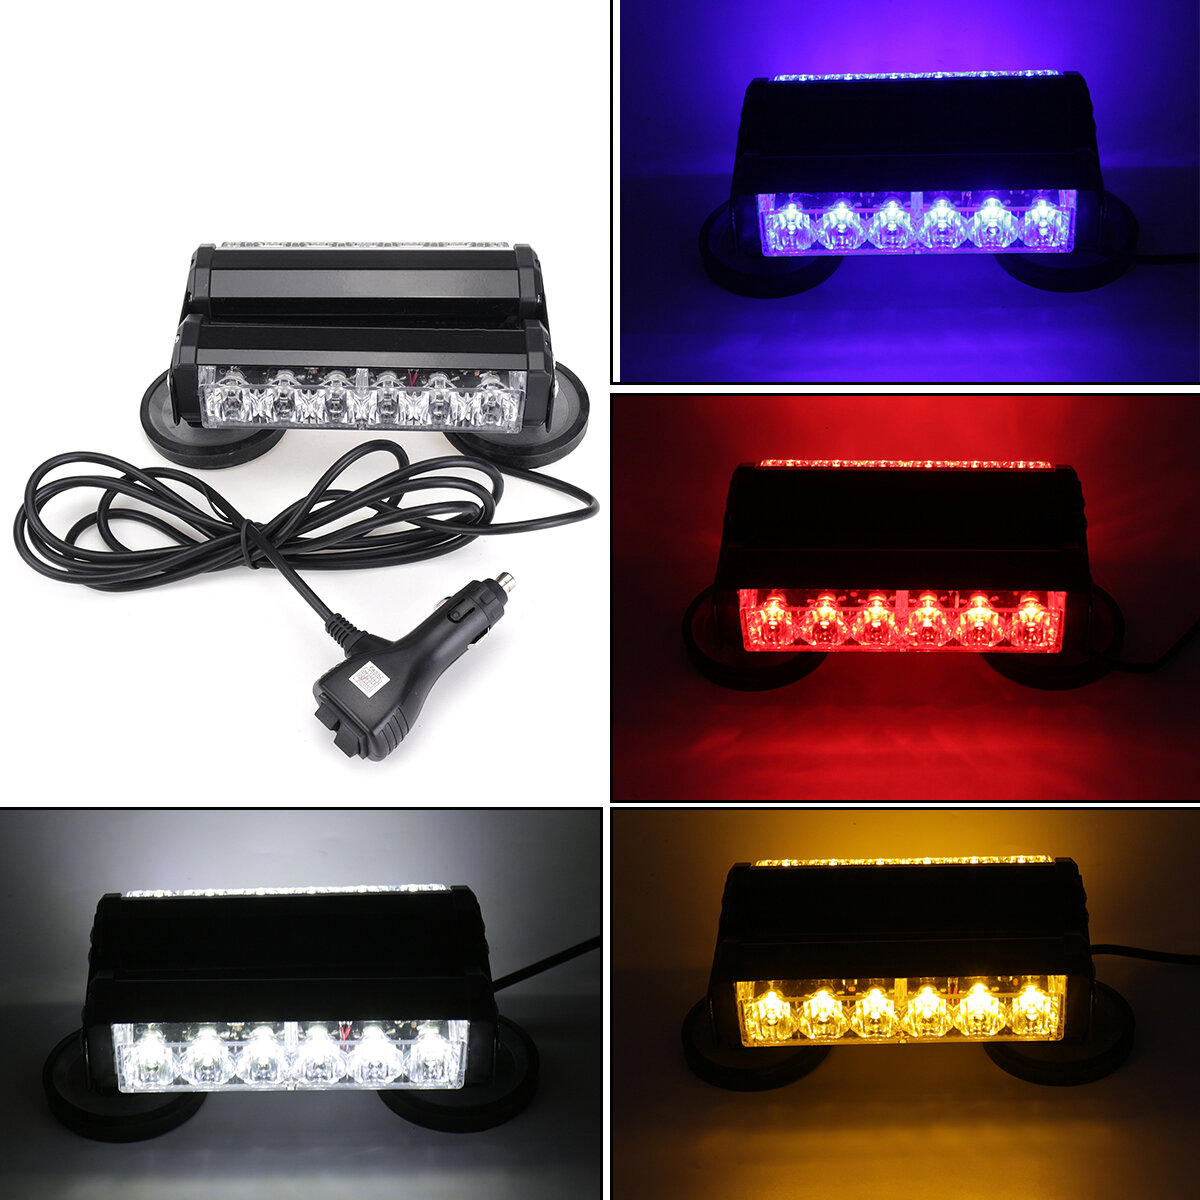 Dubbelzijdig LED auto stroboscooplamp Flash Waarschuwing Gevaar Noodbakenlamp 12V 36W Blauw / Wit / 